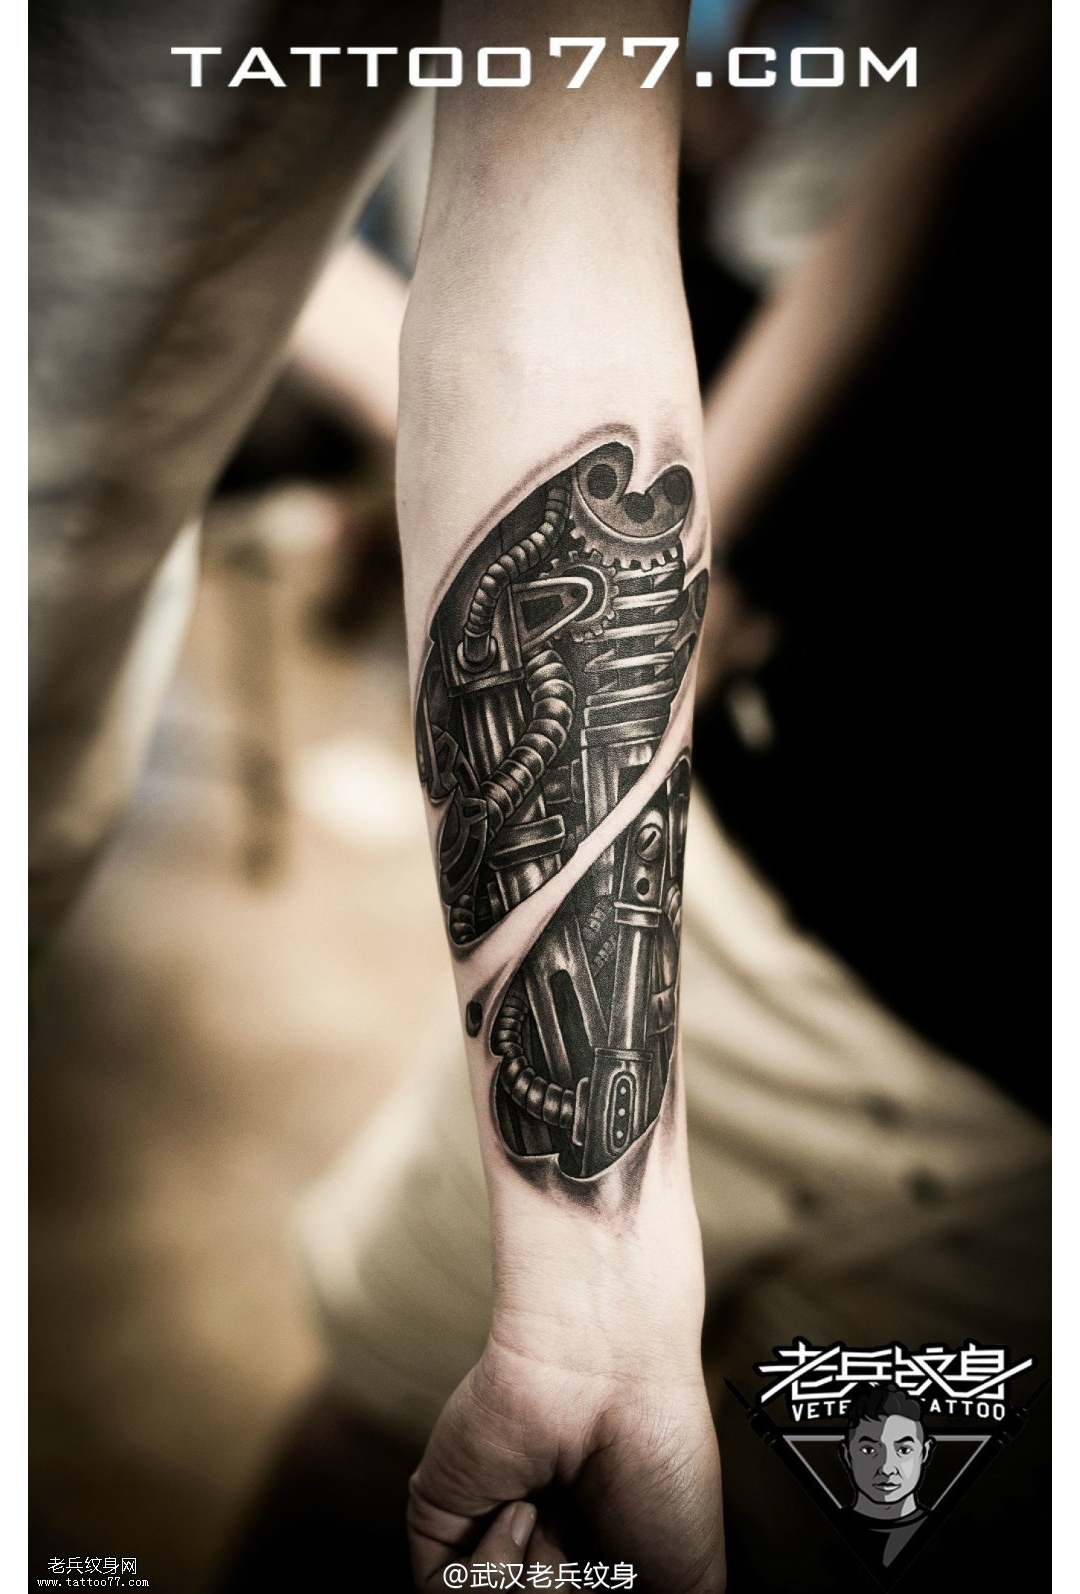 岳恒耗时69小时完成的《未来战士9-攀登者》机械手臂刺青作品详解-yy纹身网